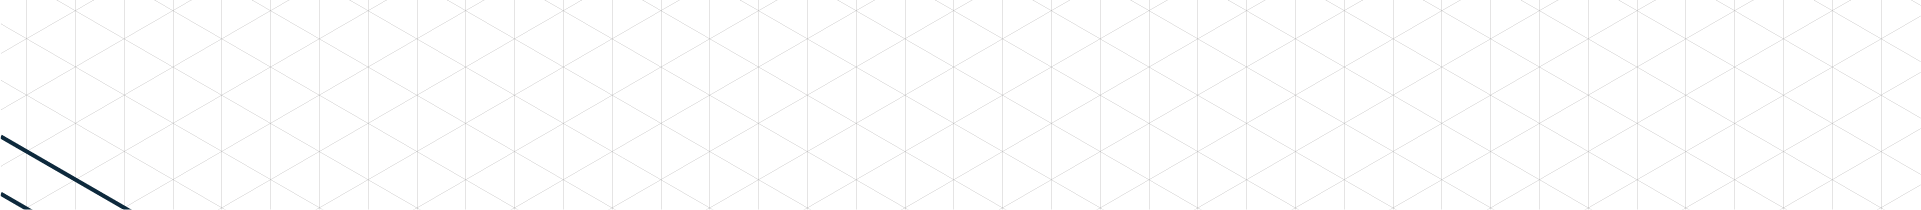 Background com textura hexagonal